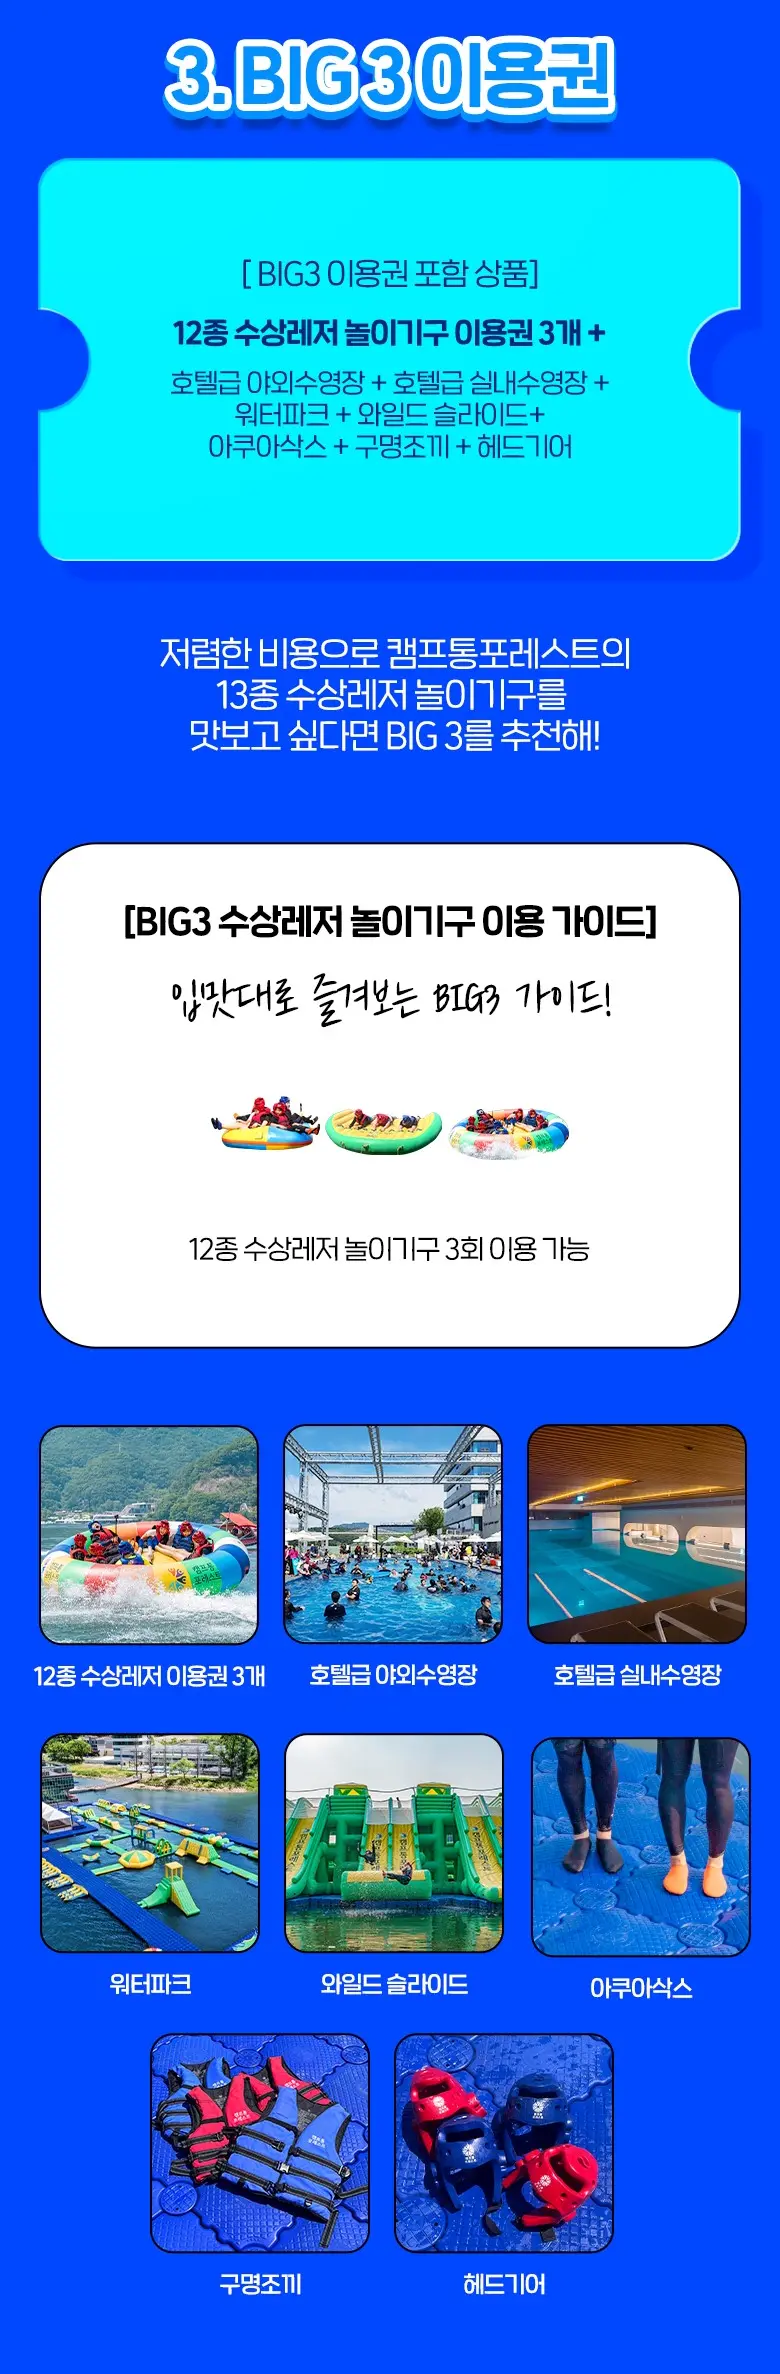 수상레저 BIG3 이용권 포함상품 및 놀이기구 설명